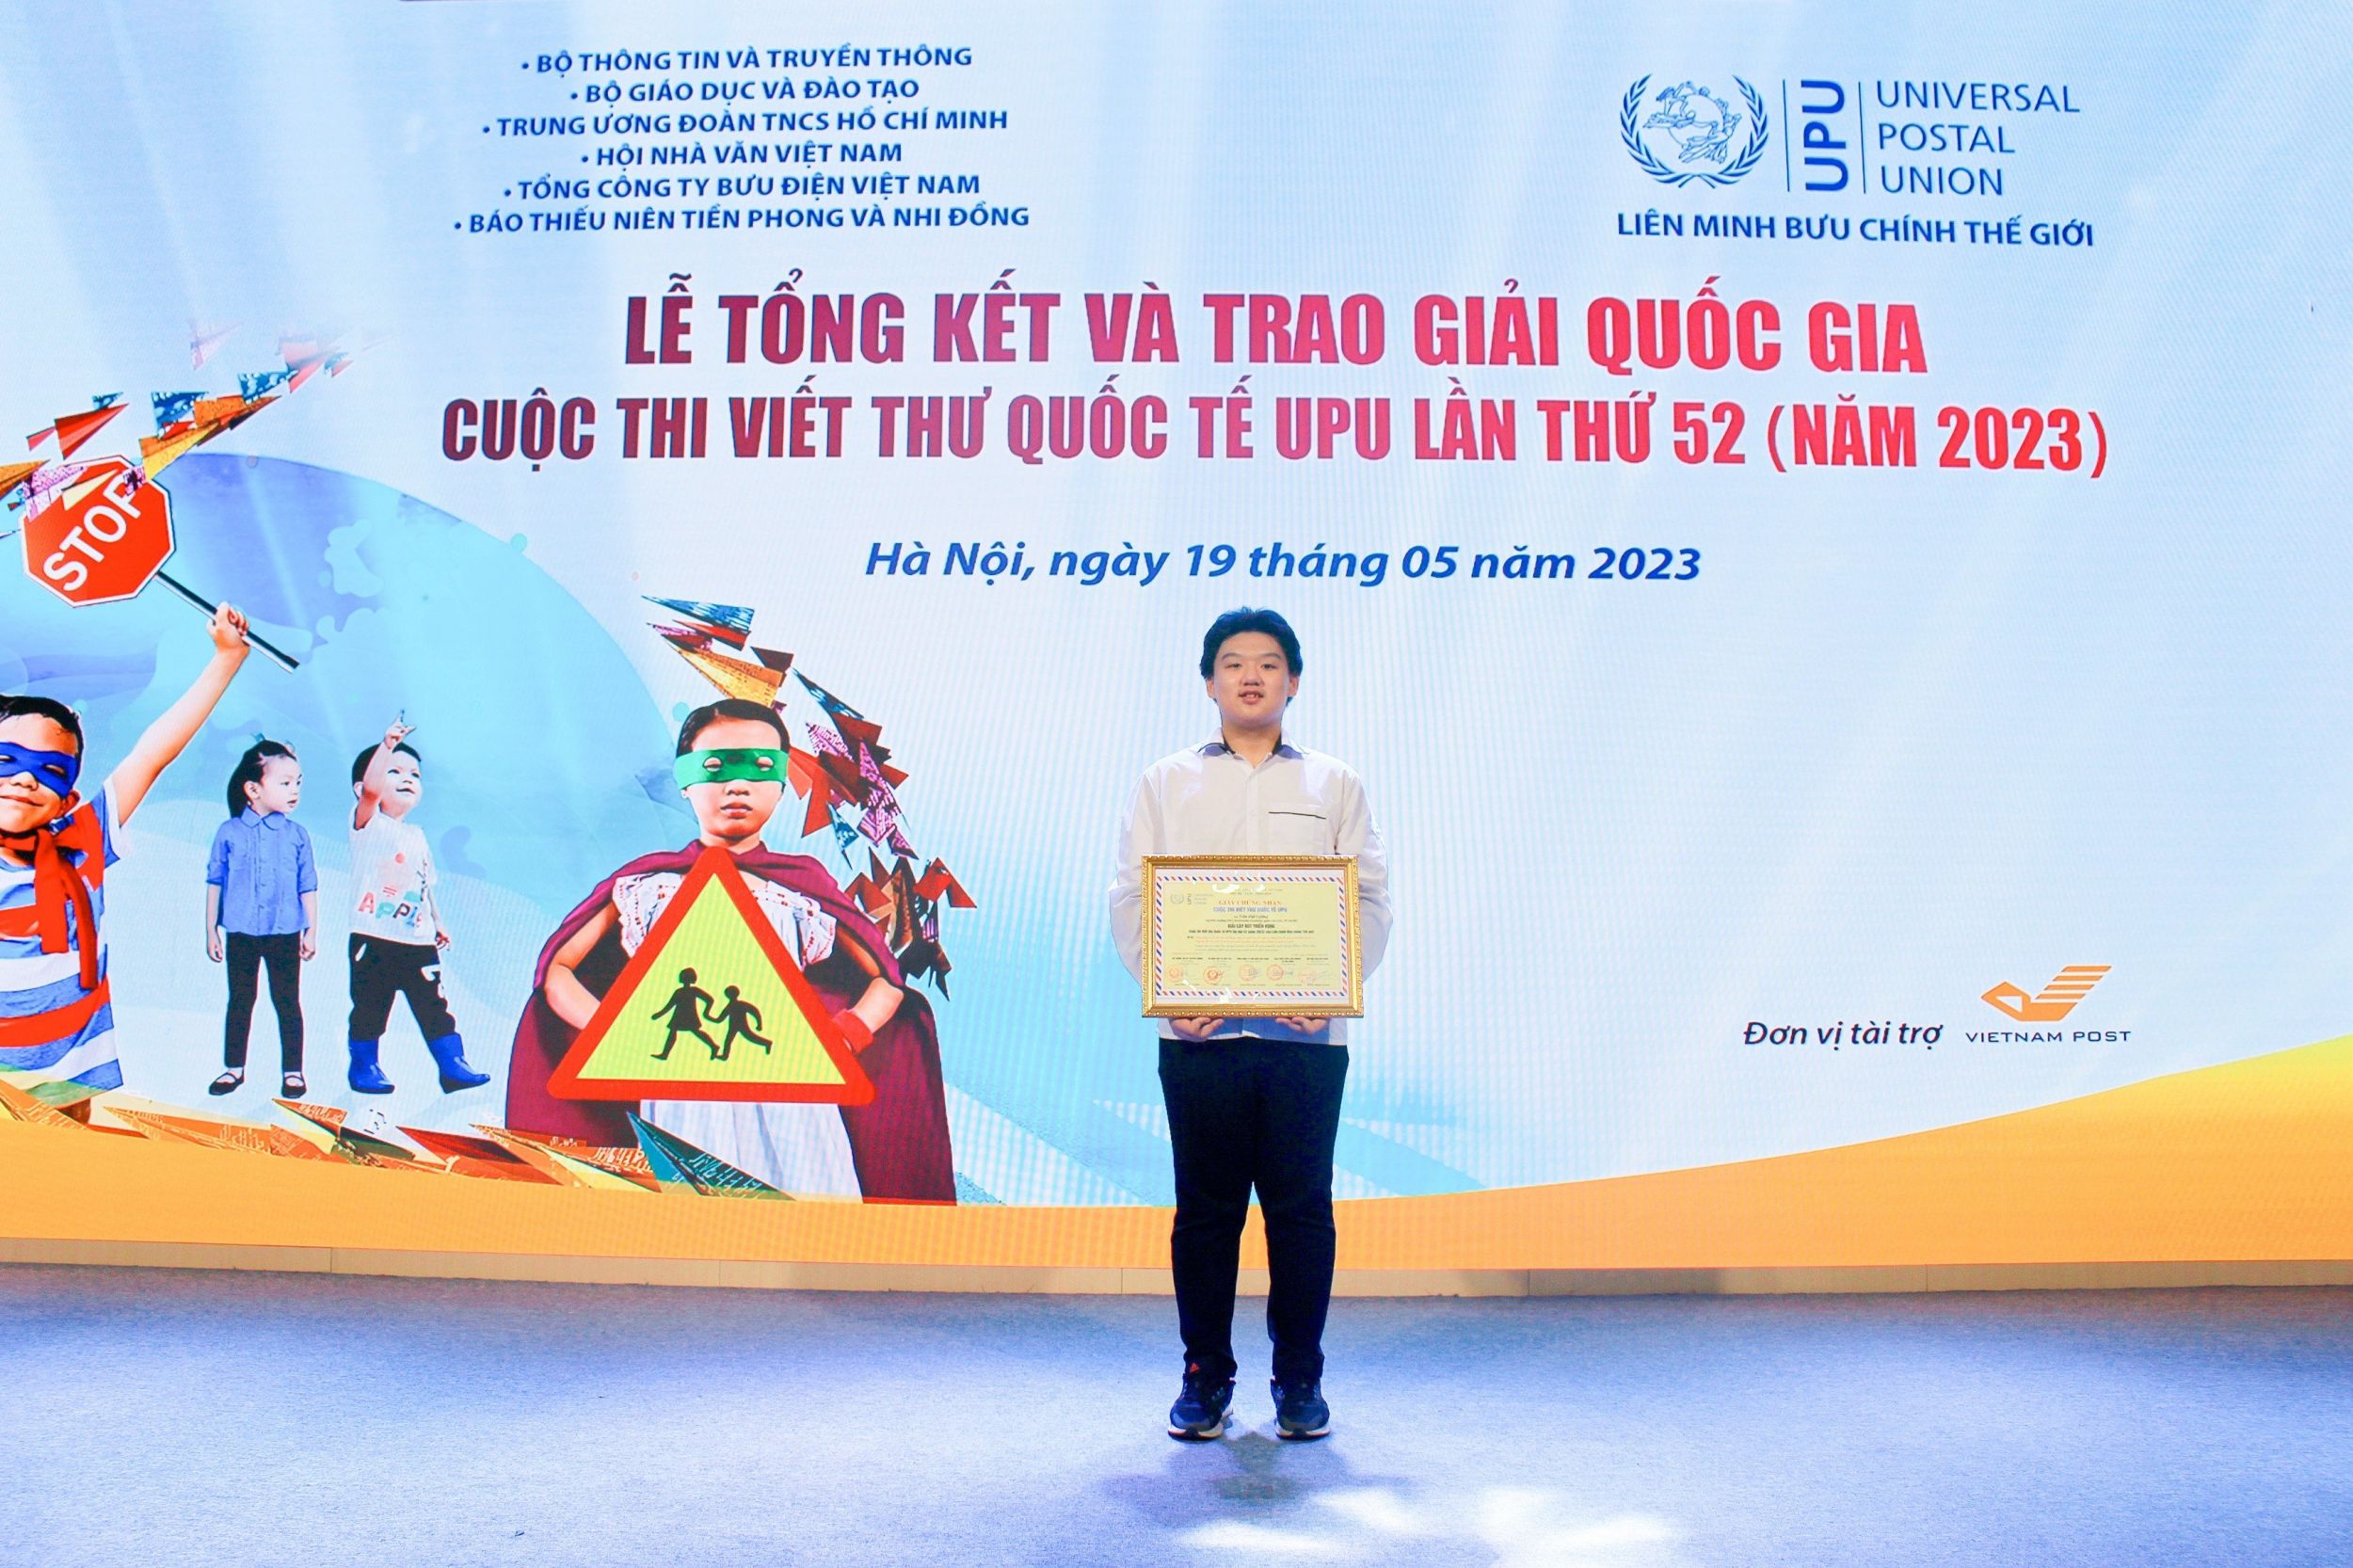 [AASS] Chúc mừng Arcer Trần Việt Cường, lớp 9A6 xuất sắc đạt giải 